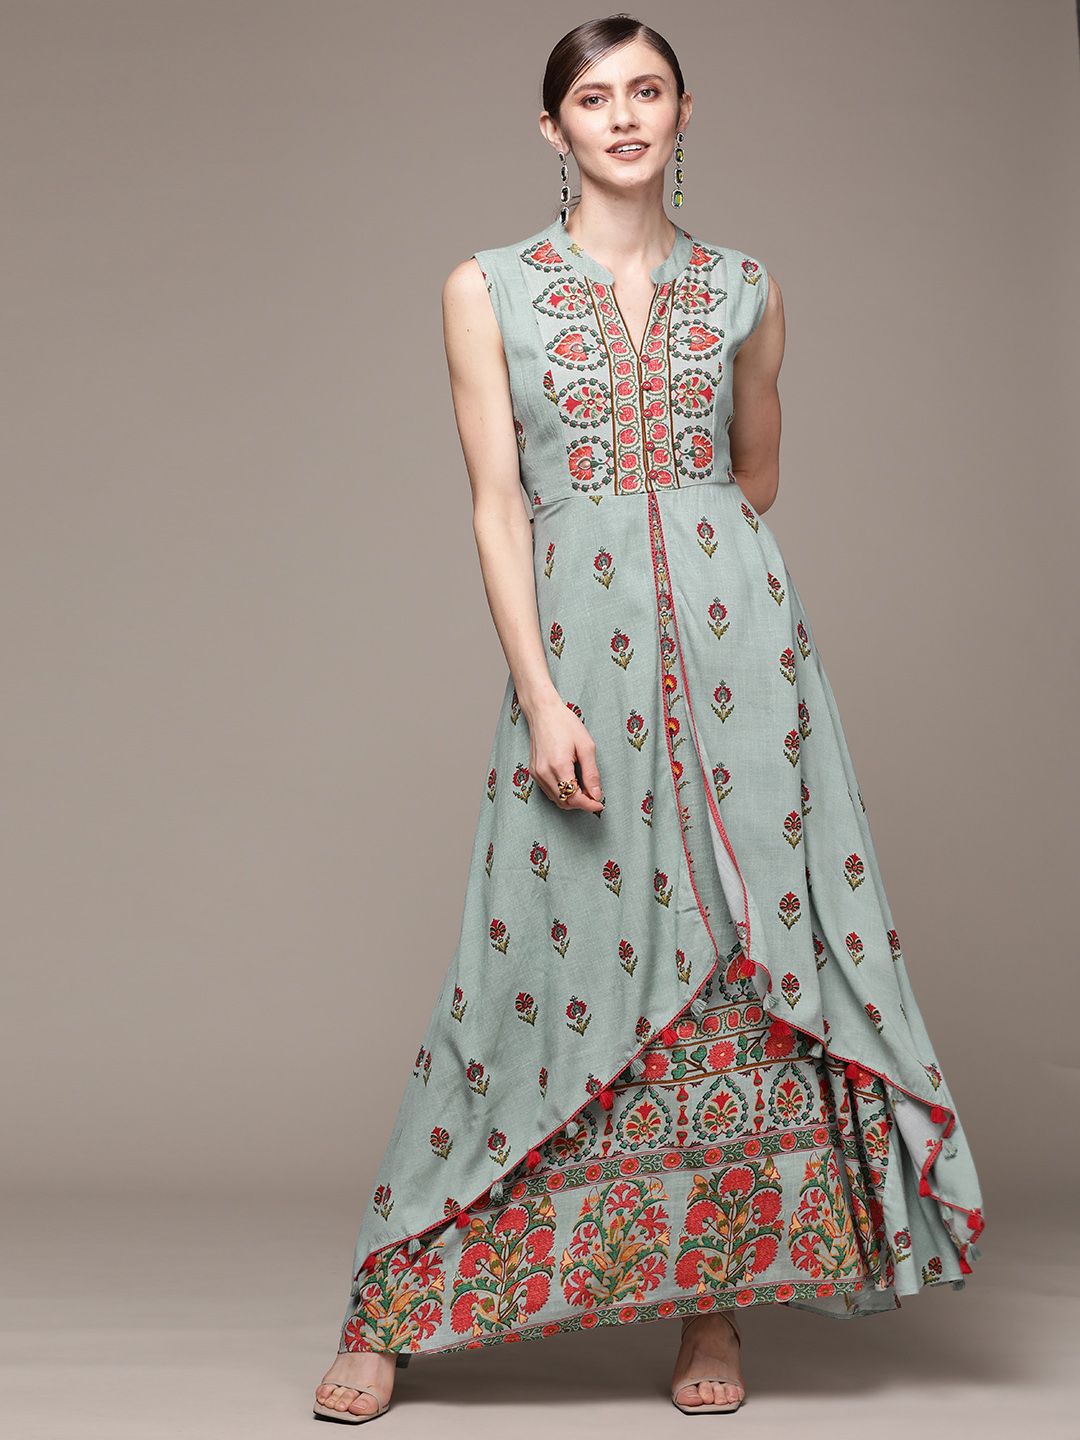 aarke Ritu Kumar Green & Red Ethnic Motifs Layered Maxi Dress Price in India